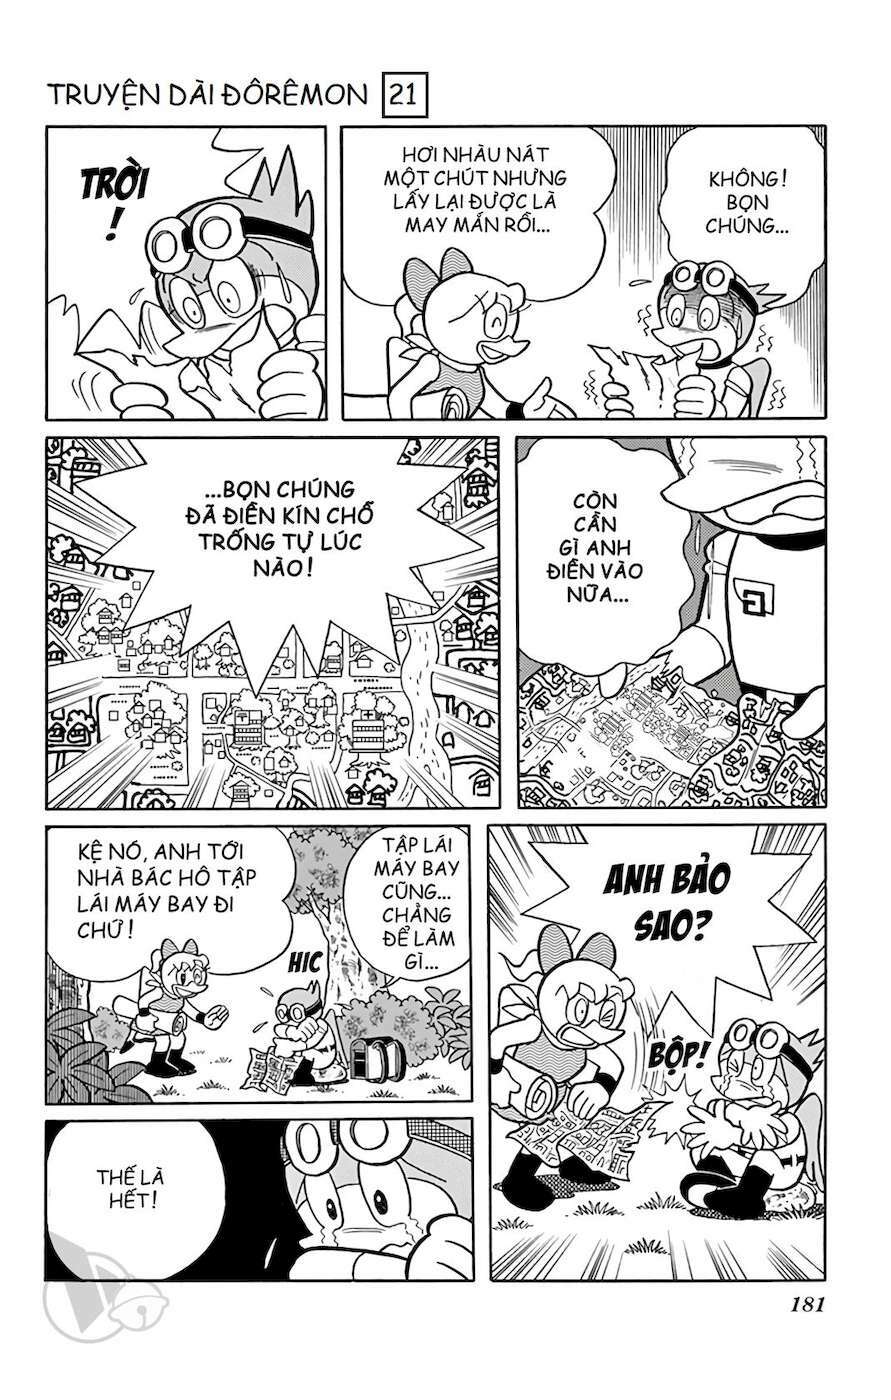 Truyện Tranh Doraemon: Du Hành Đến Vương Quốc Loài Chim trang 180